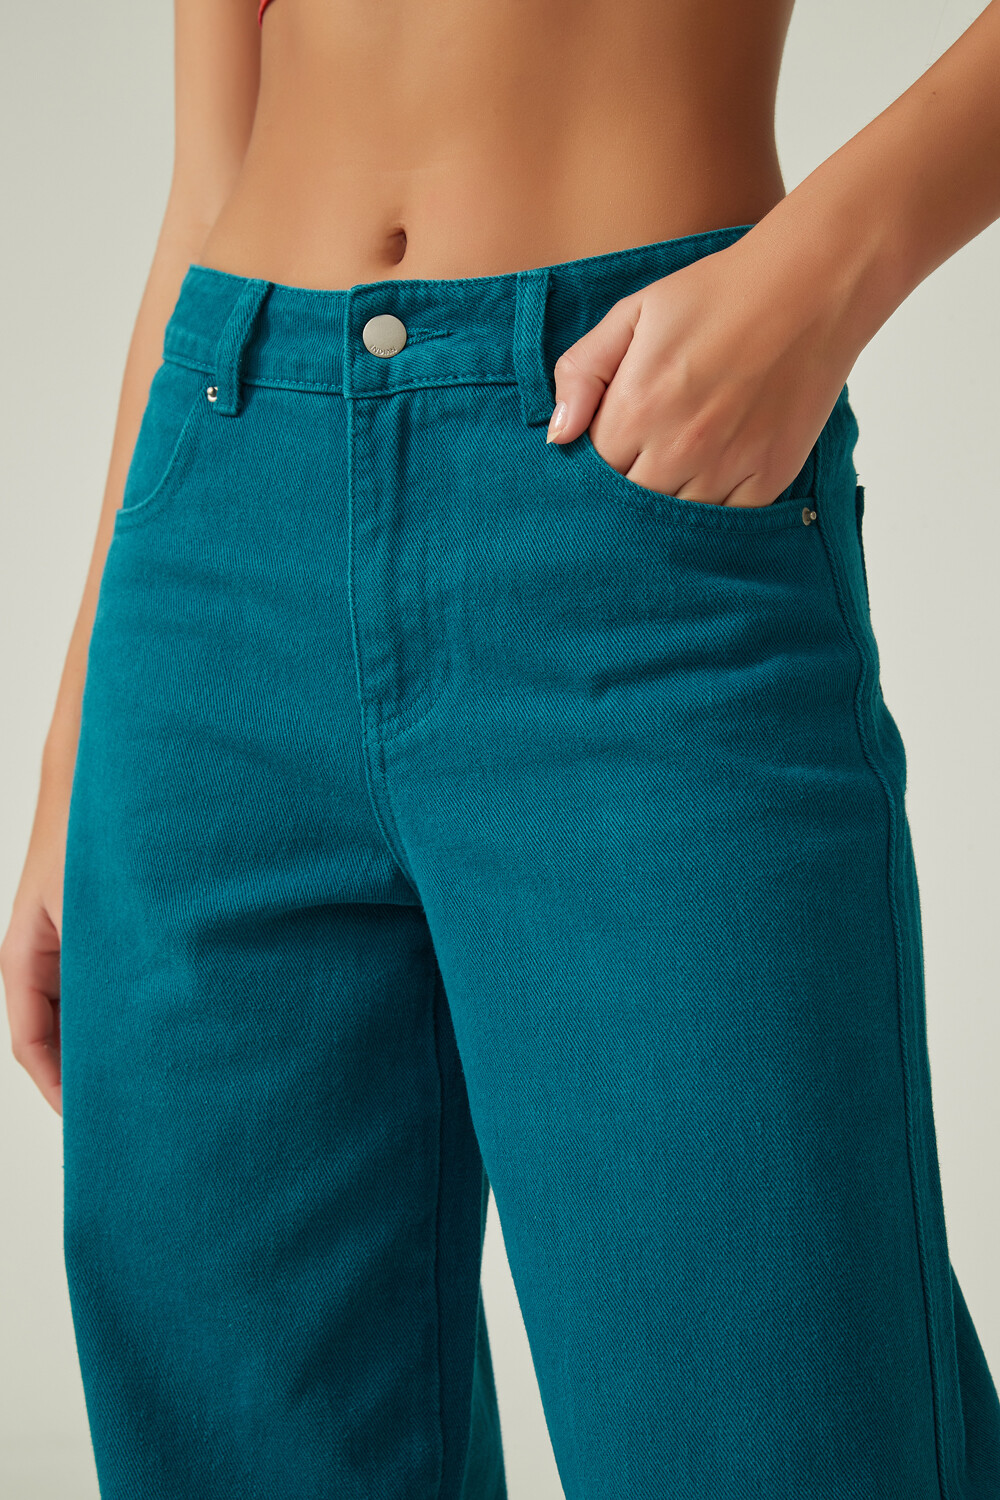 Pantalon Annua Verde Azulado